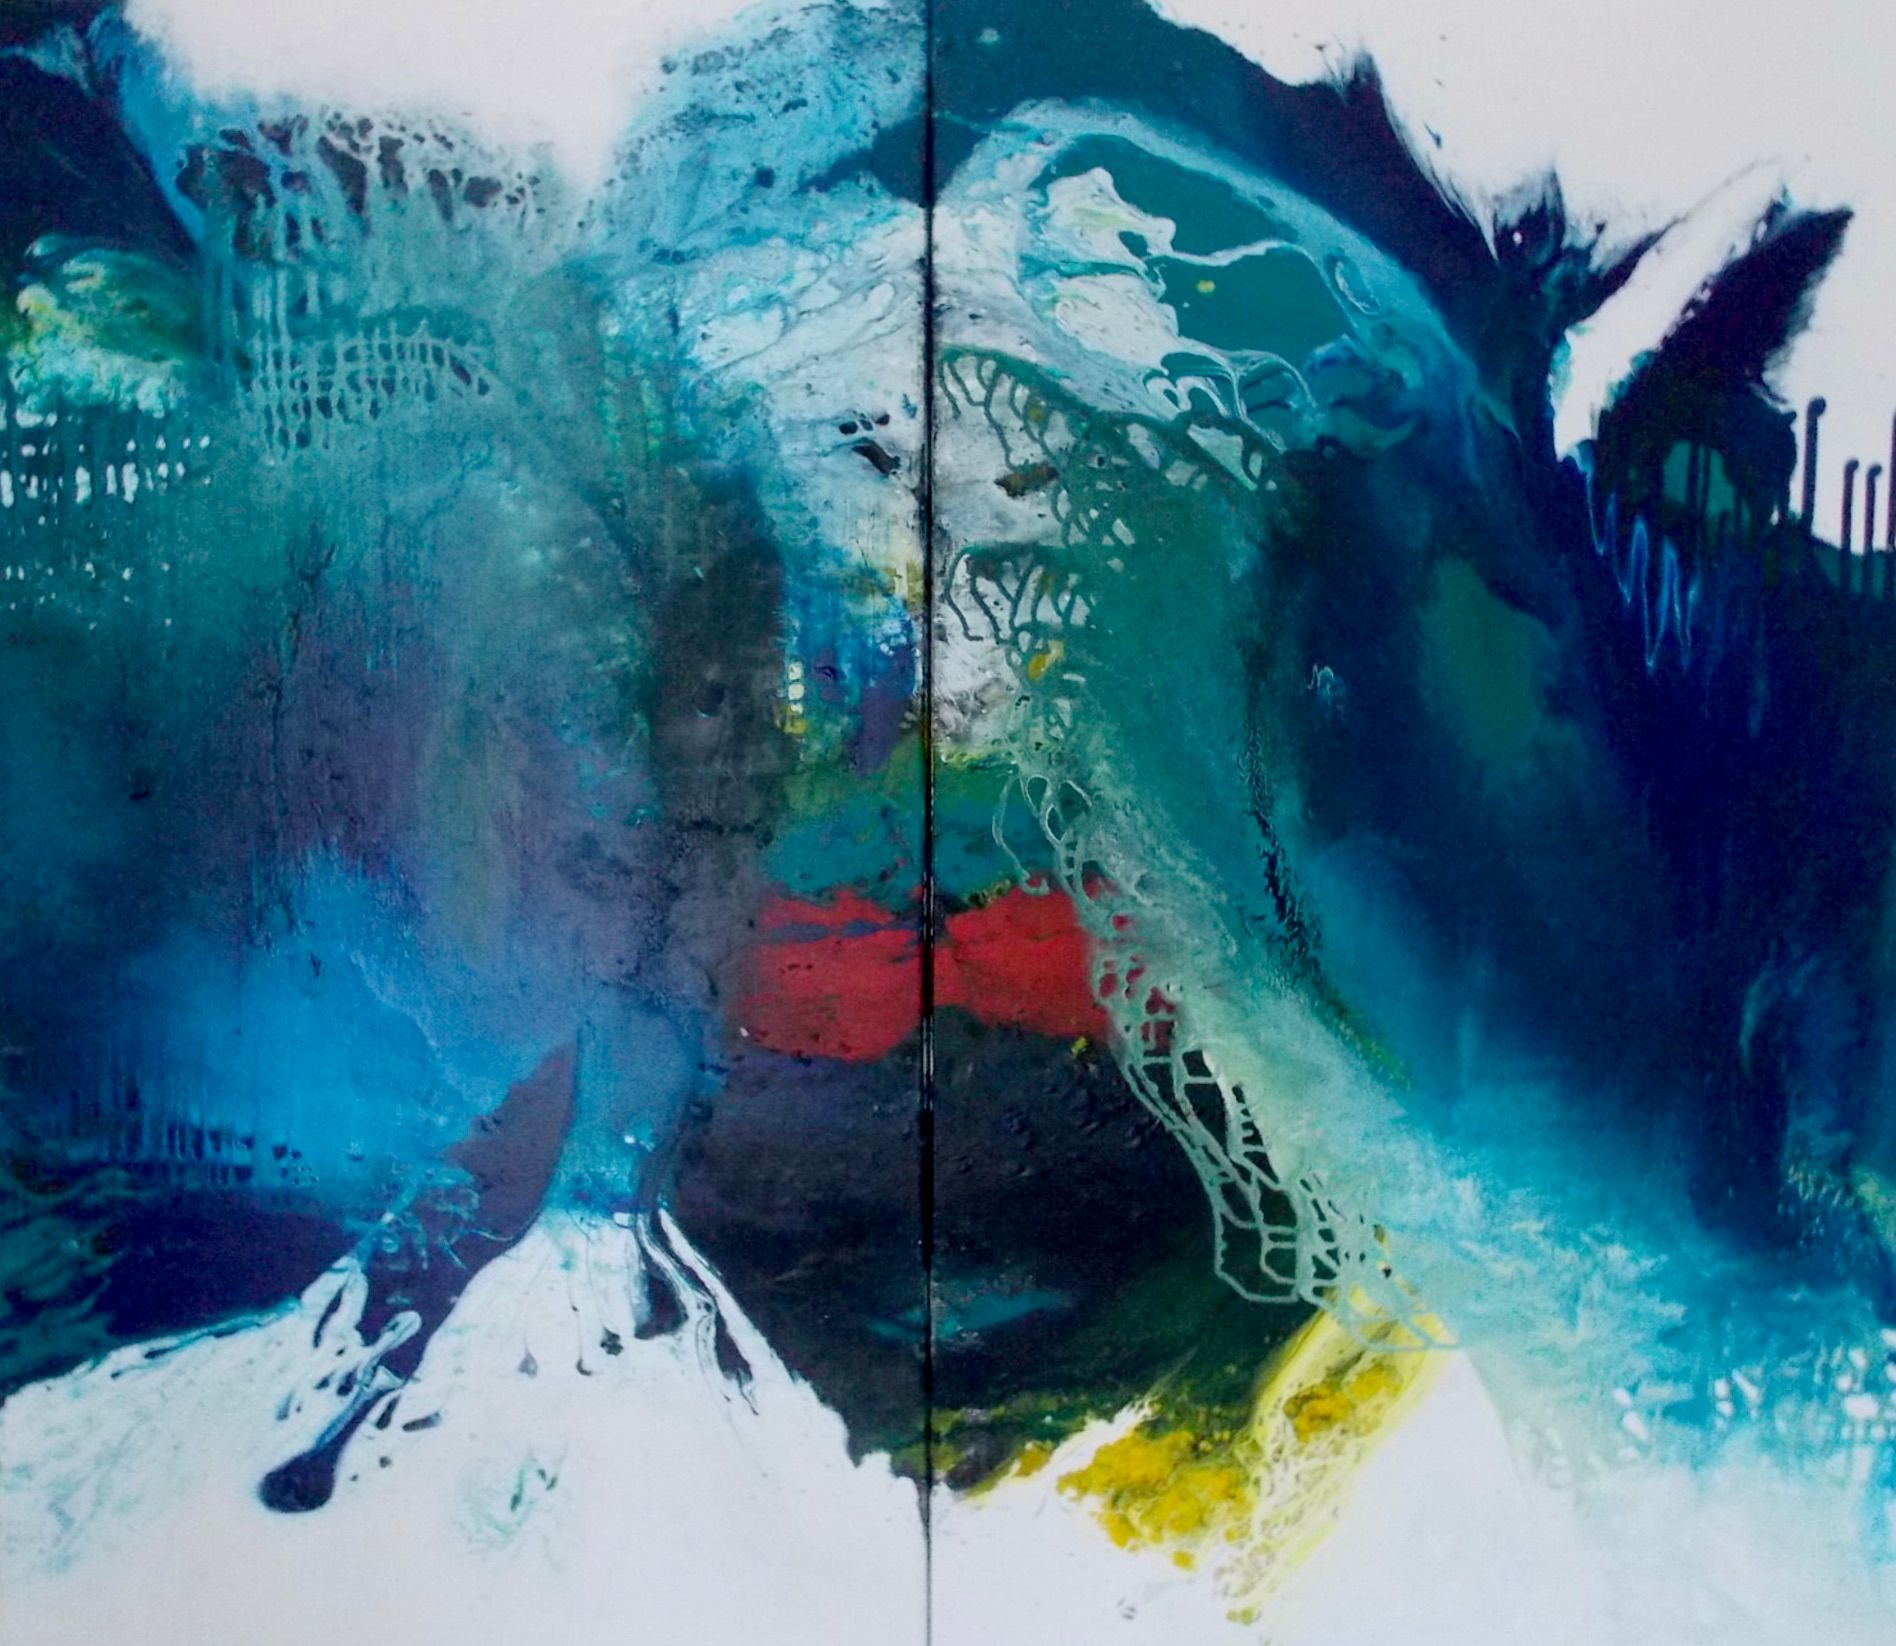 Christa Haack "Riconoscimento blu 1 + 2 - Dittico". Questo dipinto astratto è composto da due immagini unite tra loro. I colori sono prevalentemente blu, turchese, verde, con un po' di rosso e giallo.